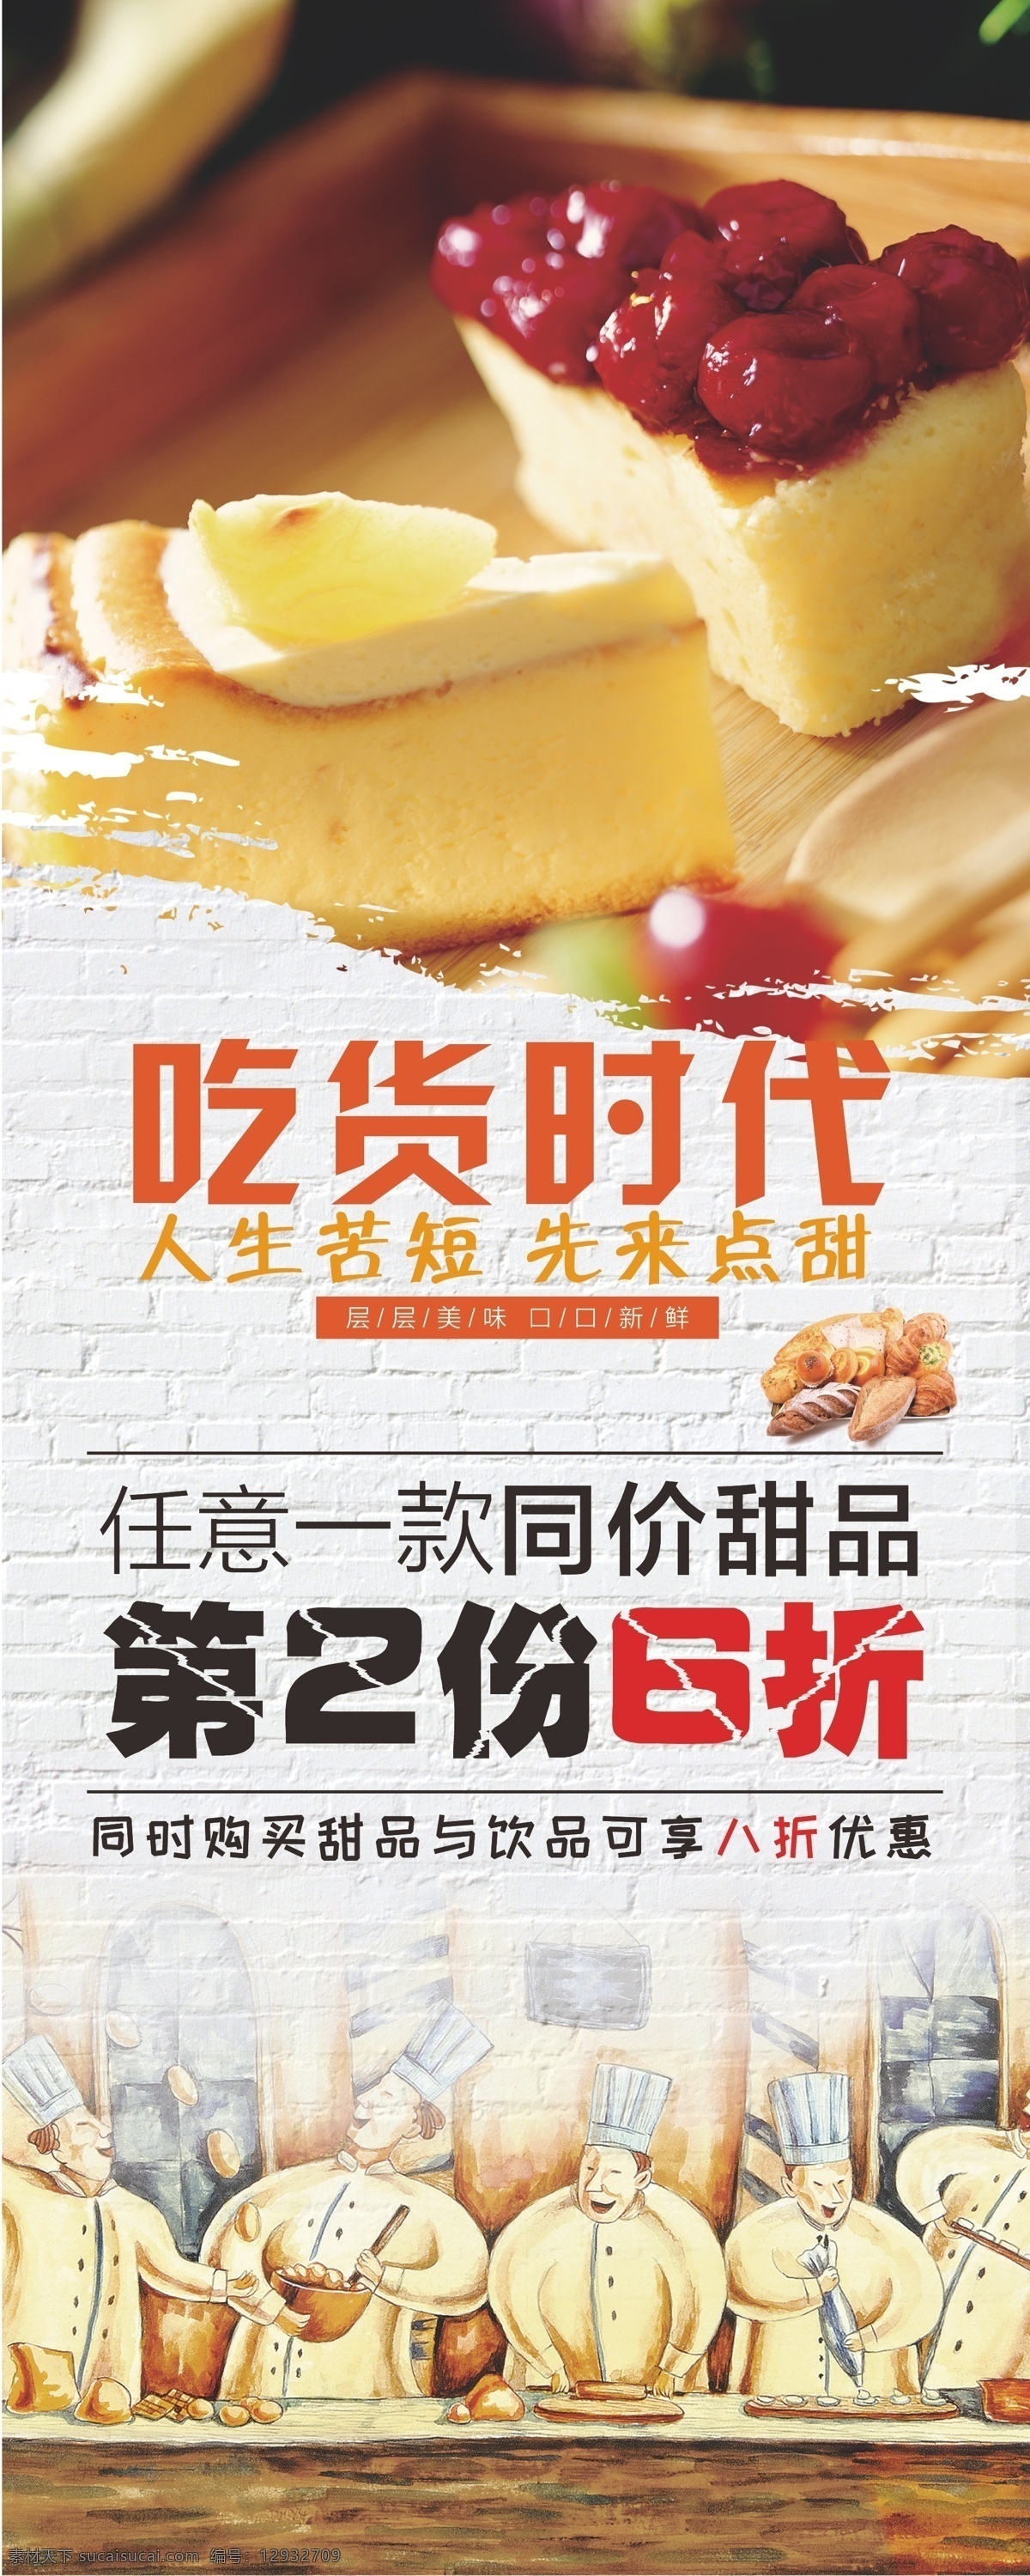 甜品 宣传 饮品 海报 卡通 面包 夏季 饮品海报 展板